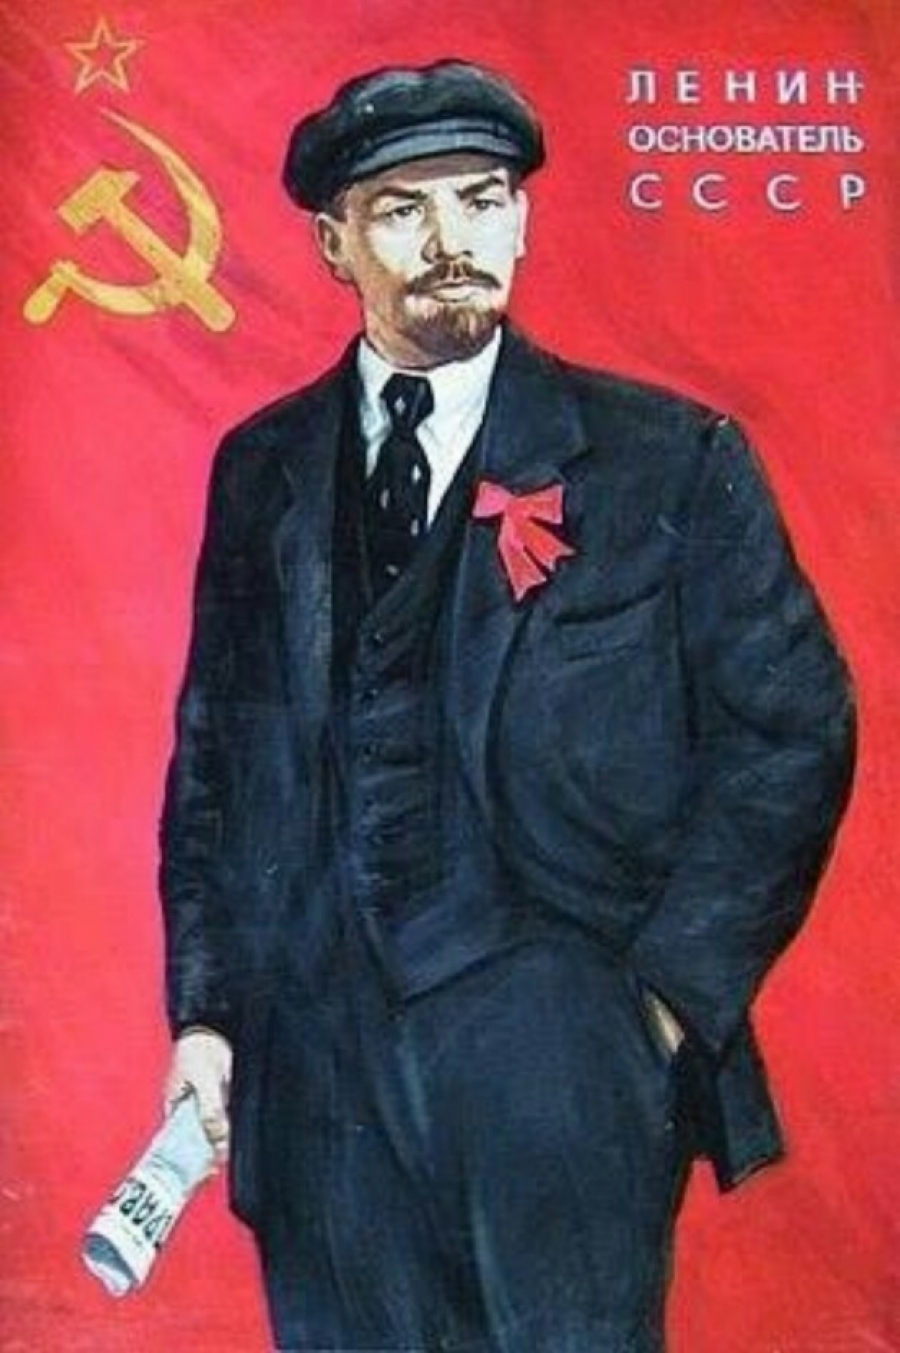 Поздравляем со 151-ой годовщиной со дня рождения В.И.Ленина